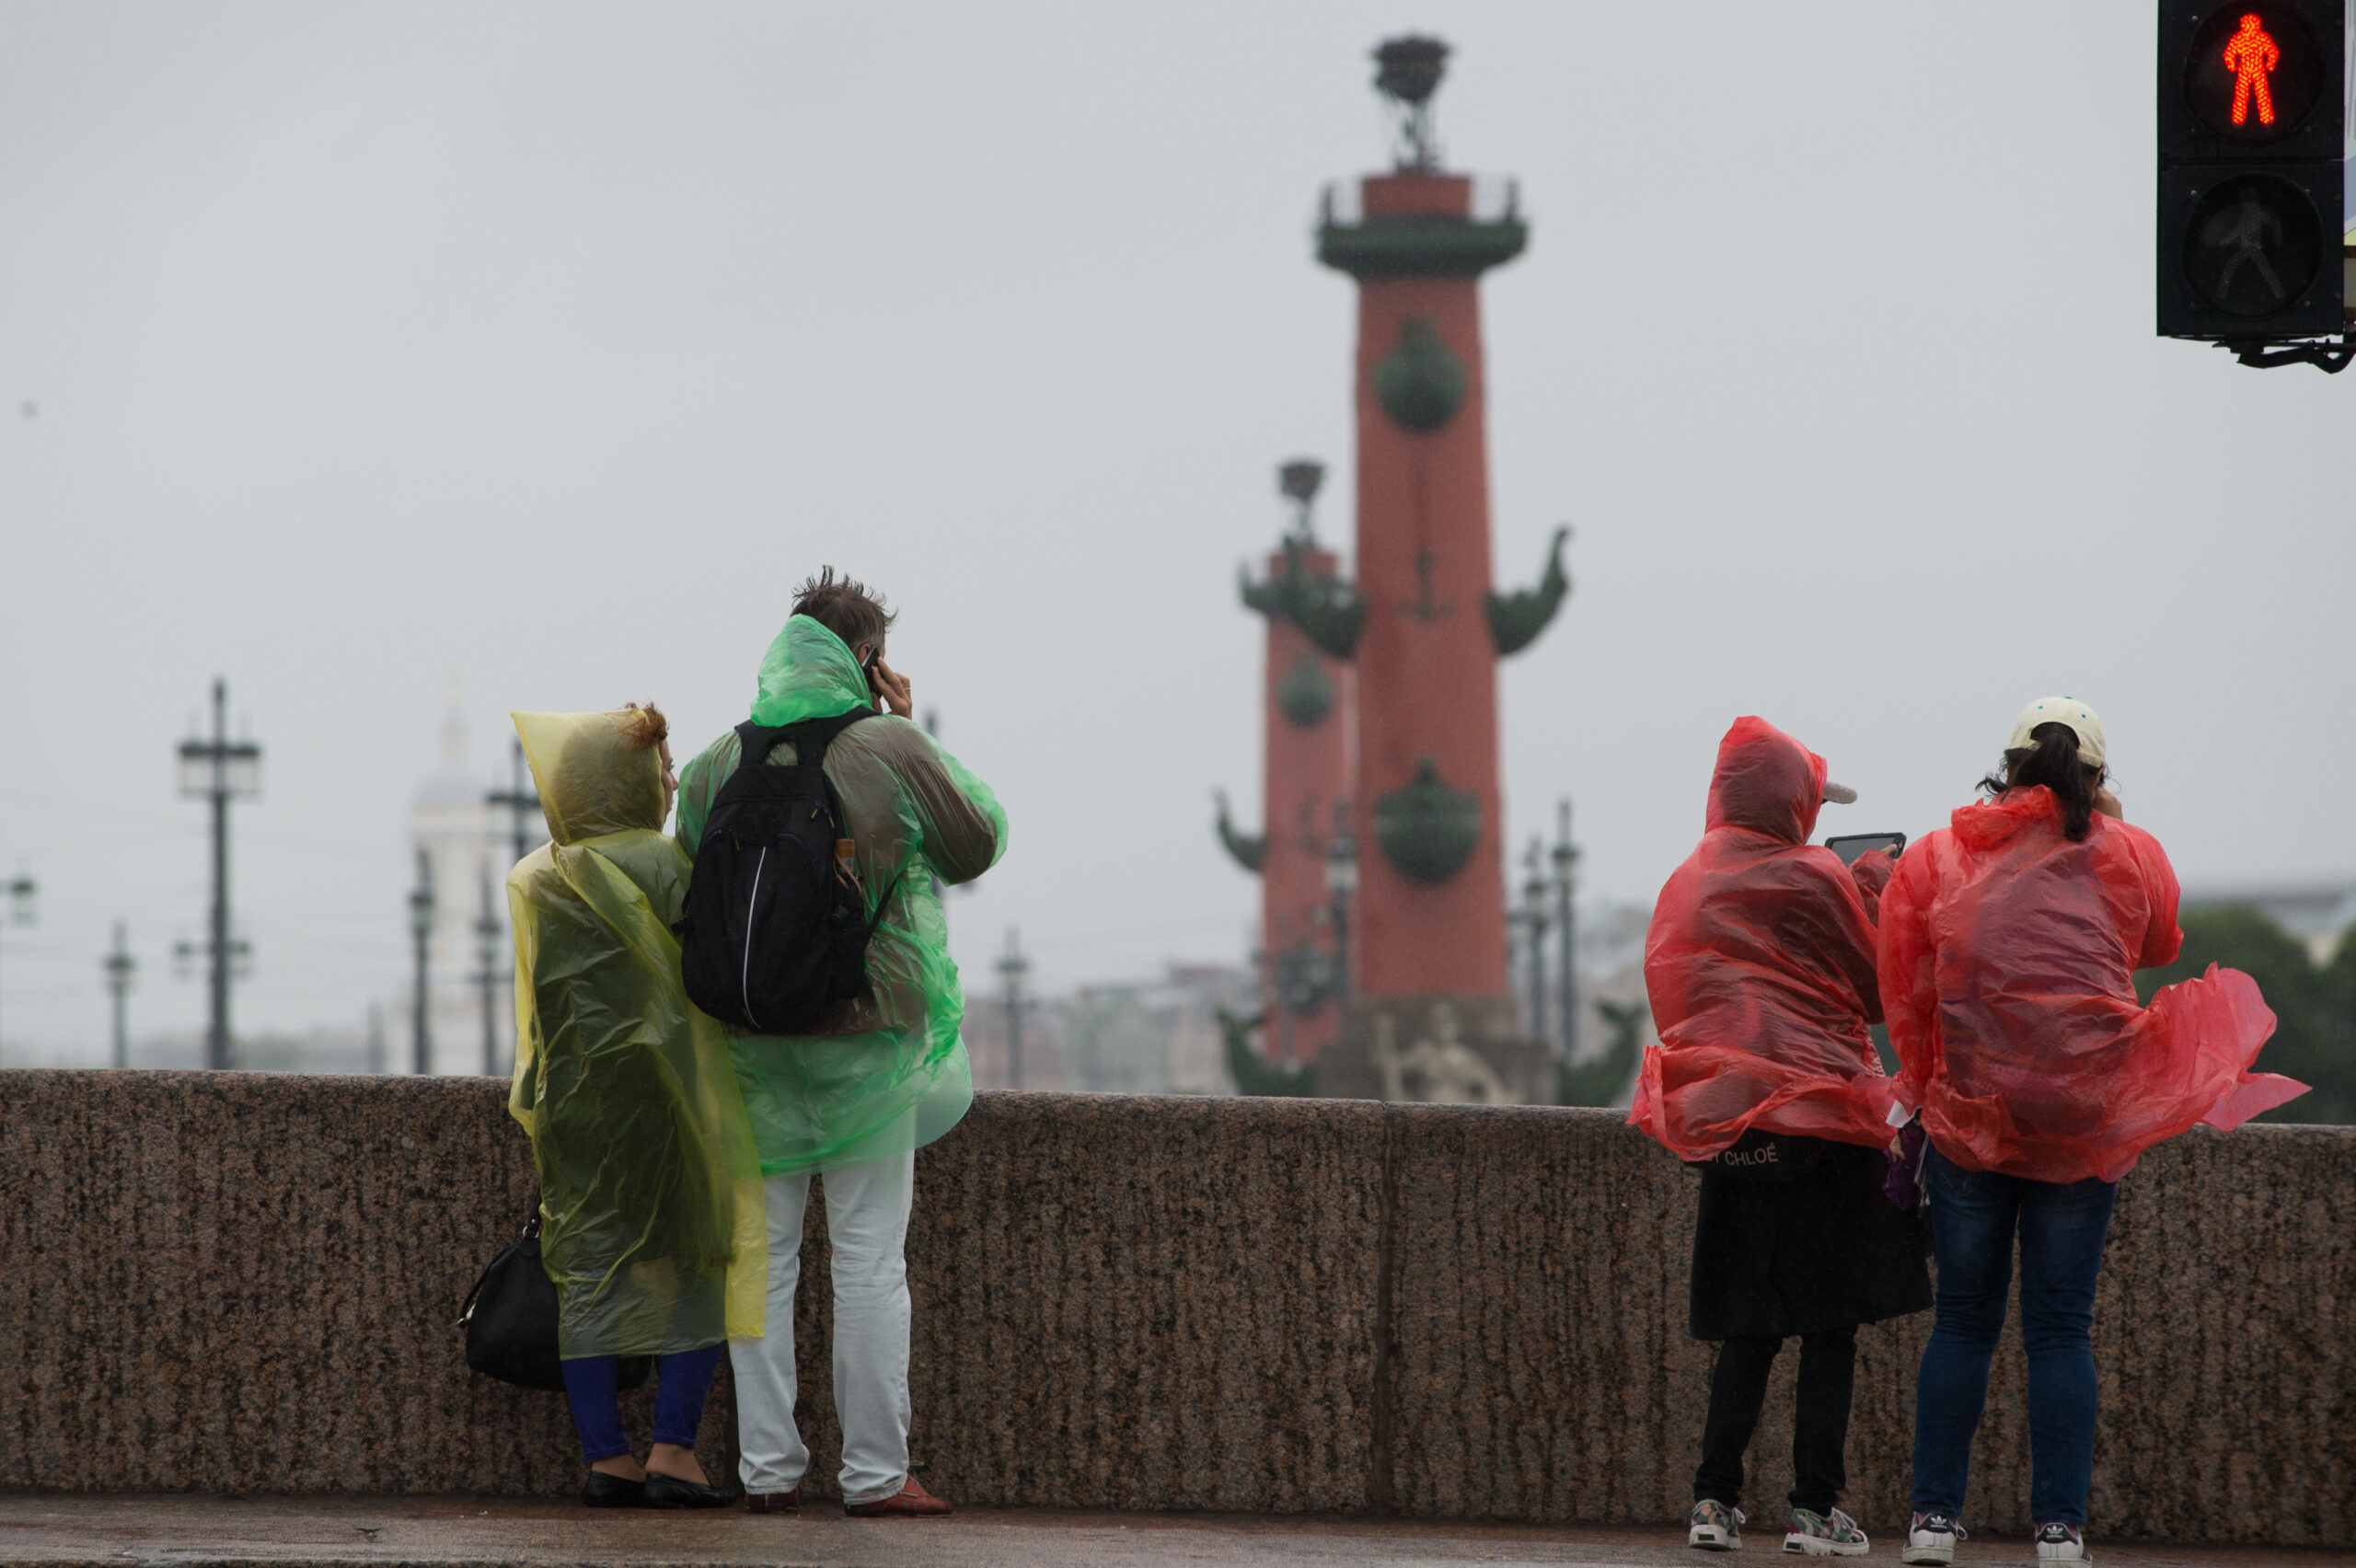 Дождь и до десяти градусов тепла: рассказываем о погоде в Петербурге 8 апреля